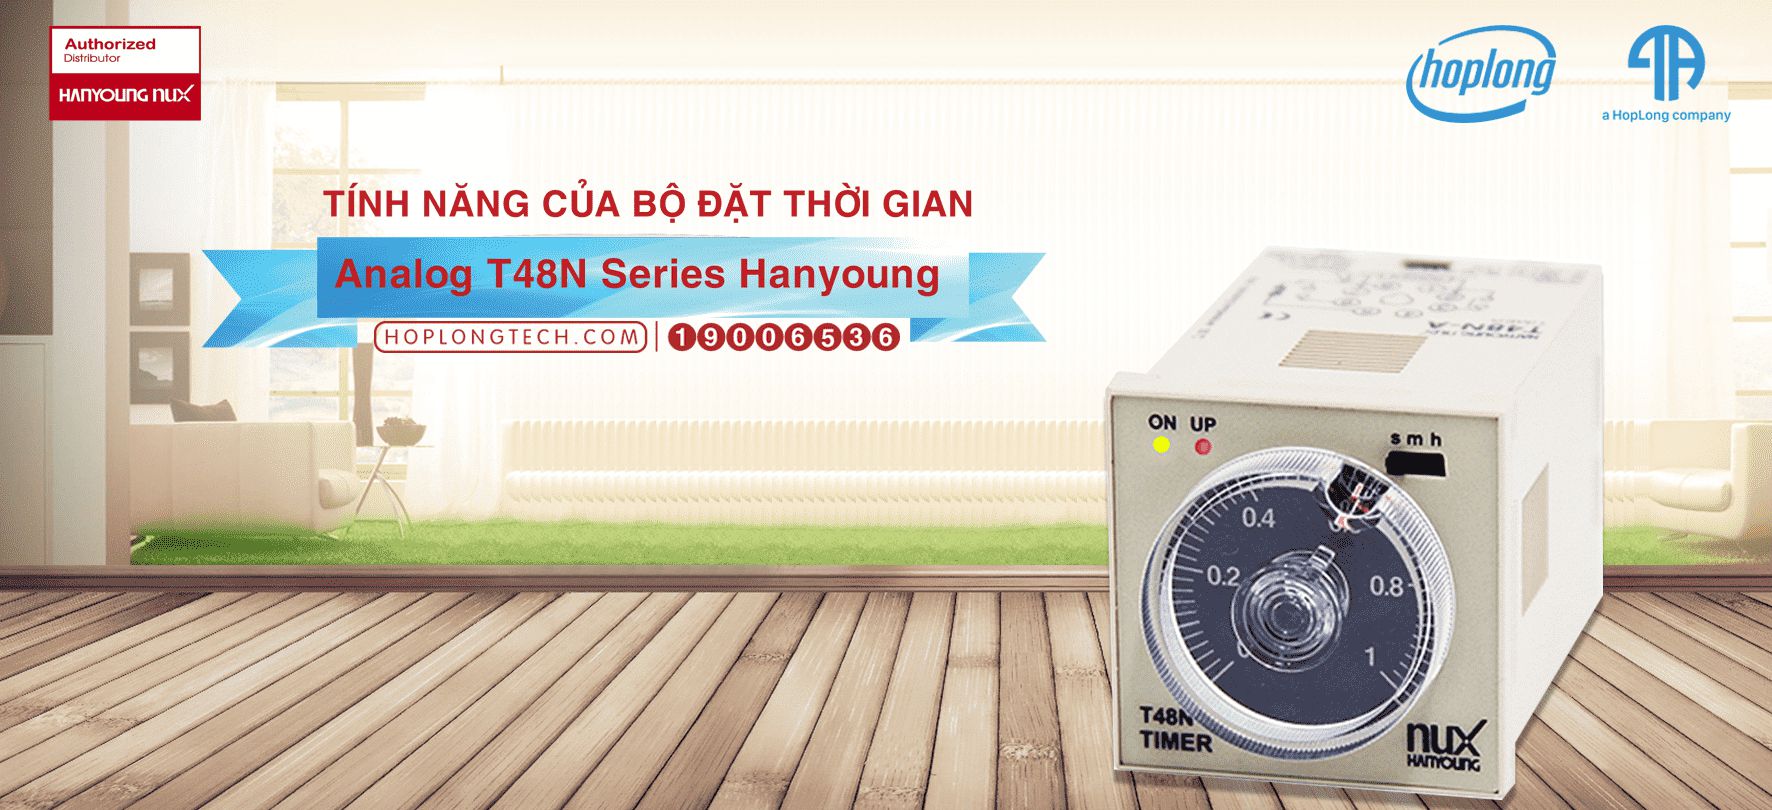 Tính năng của bộ đặt thời gian Analog T48N Series Hanyoung